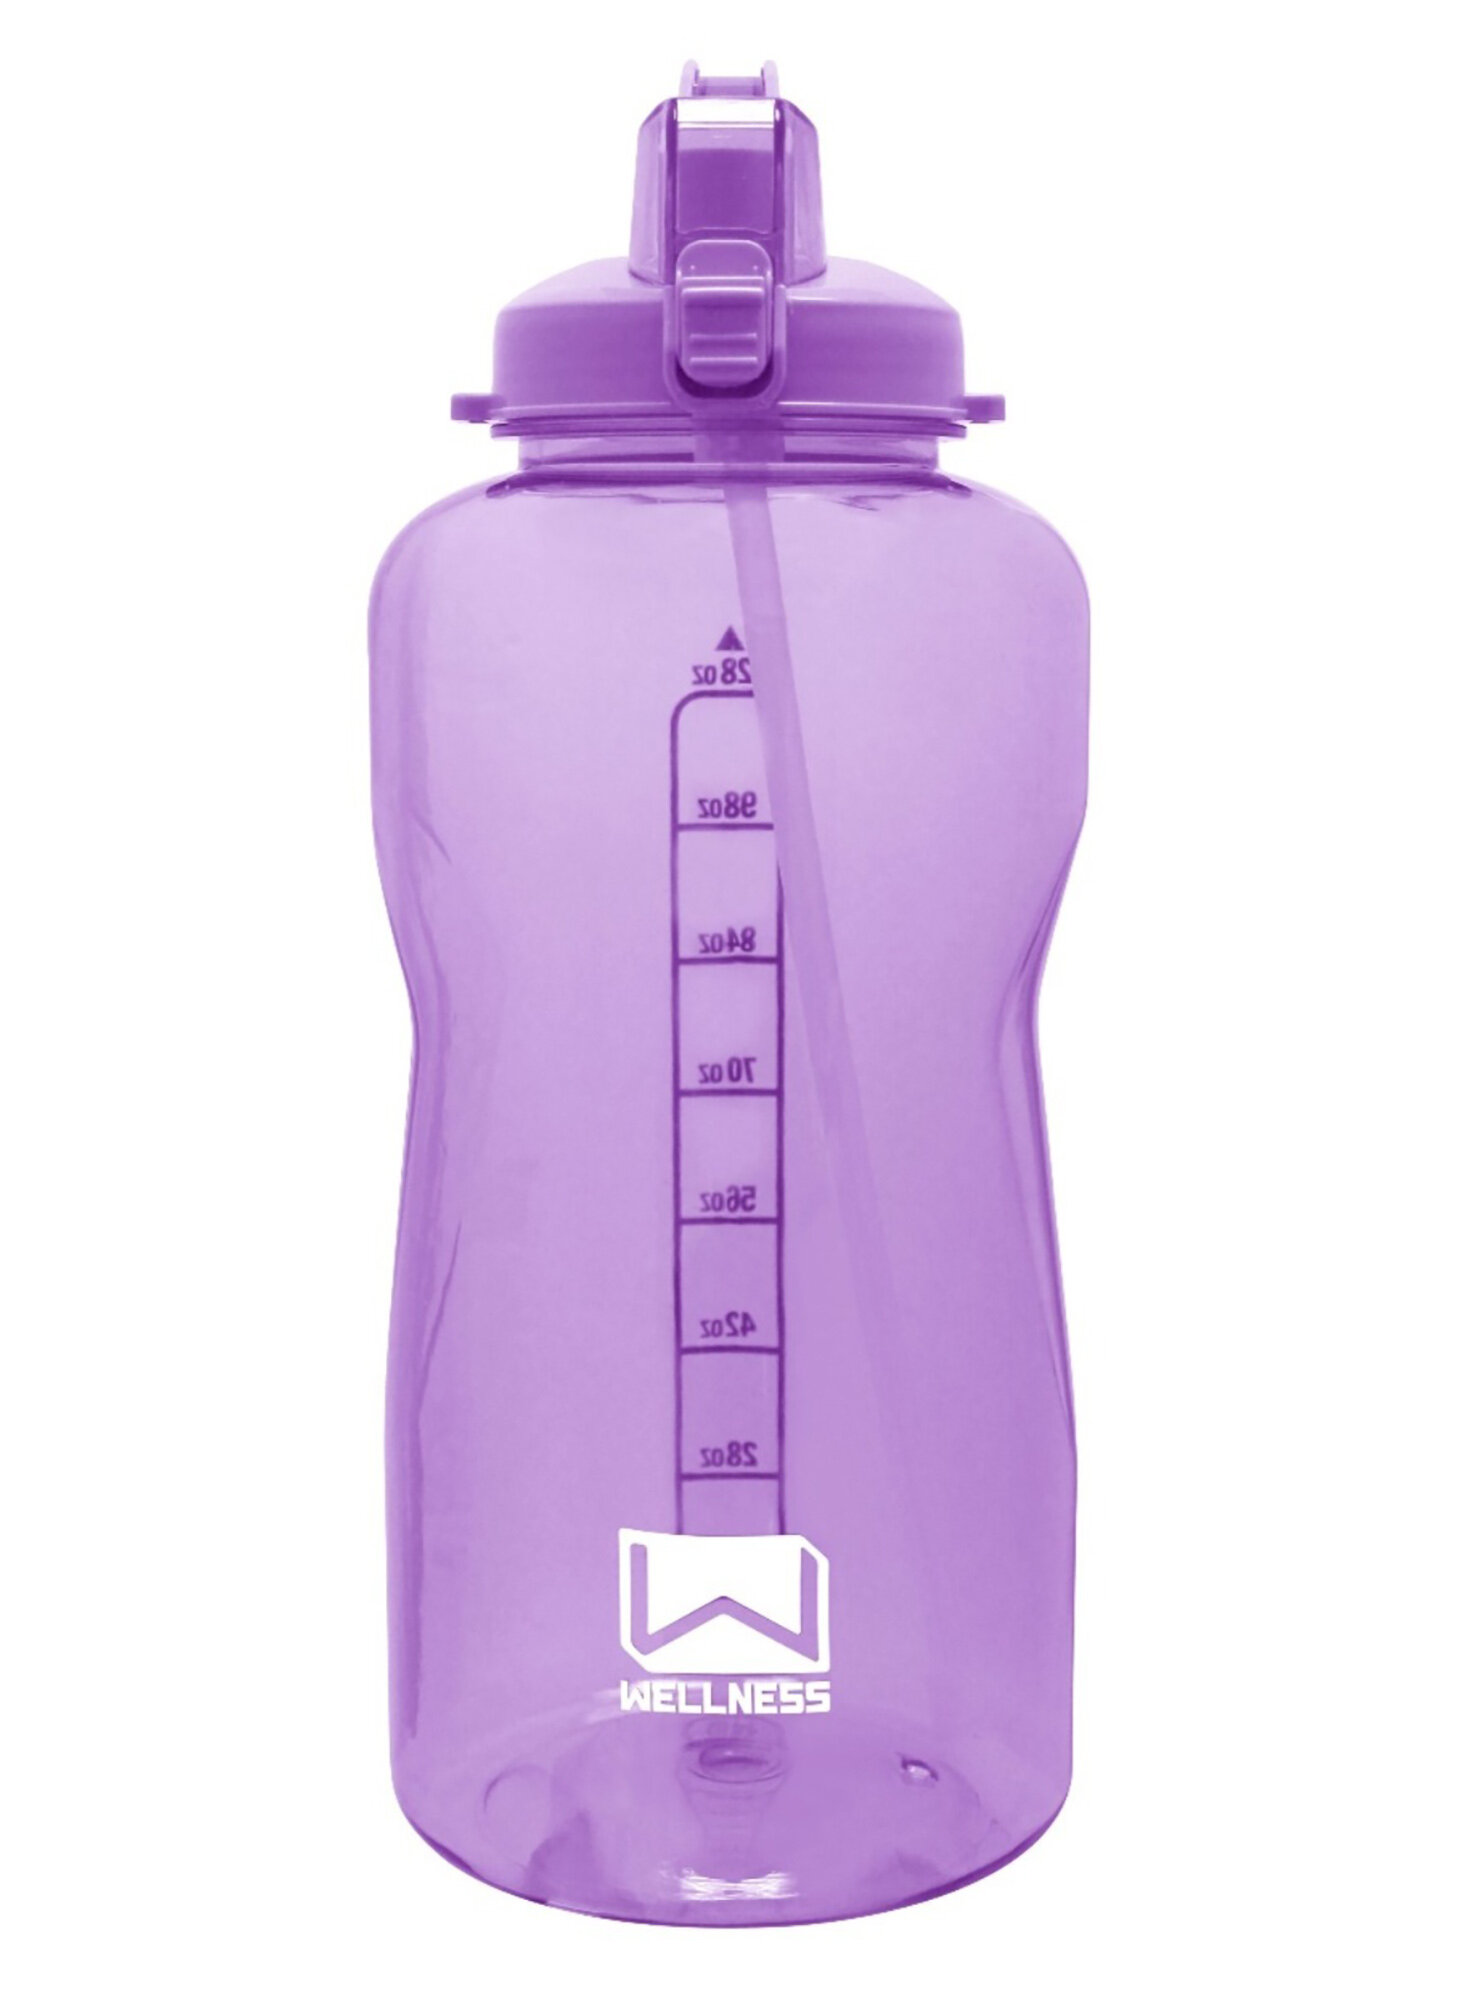 Coldest Sports Water Bottle - 128 oz (Straw Lid), Leak Proof